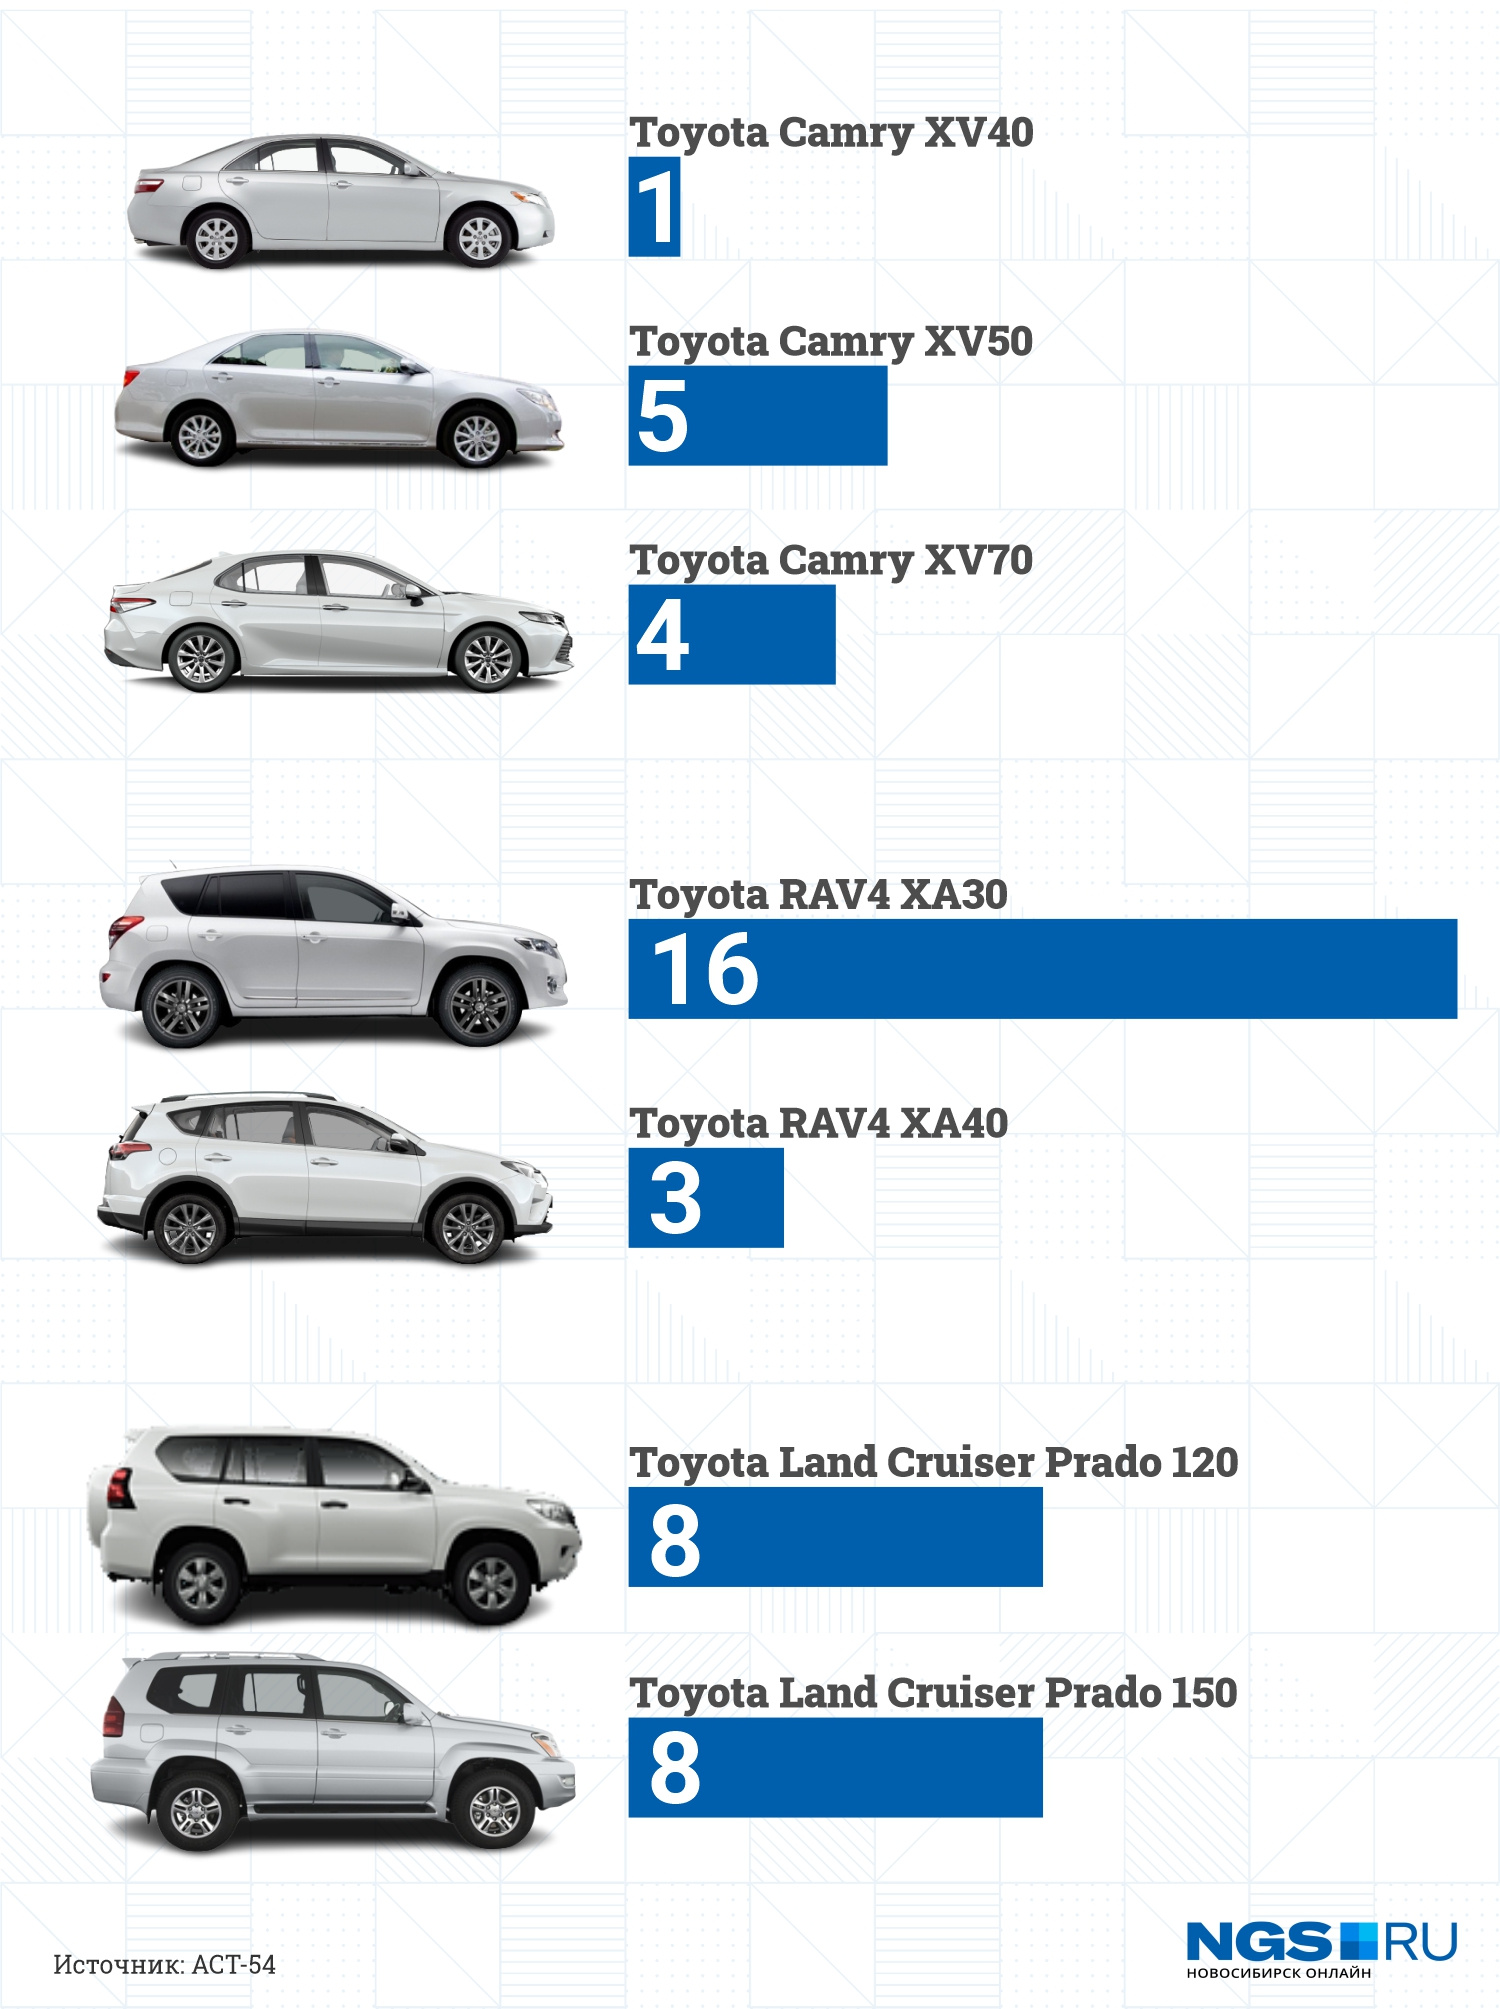 Особенности угонов по моделям Toyota